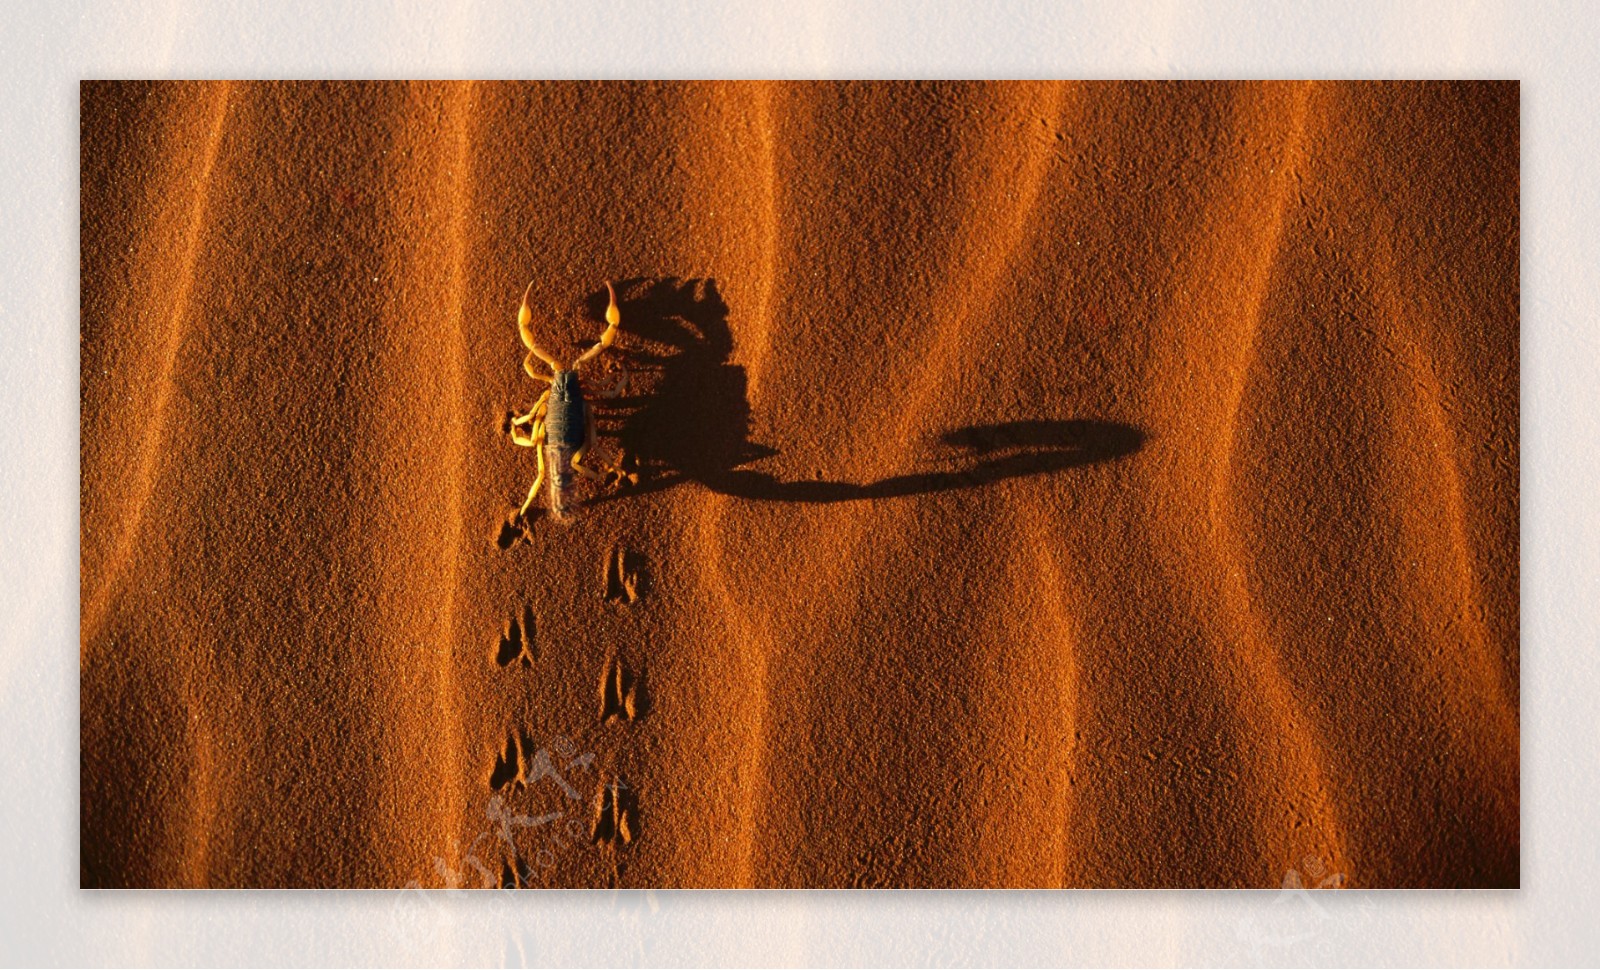 沙漠蝎子图片